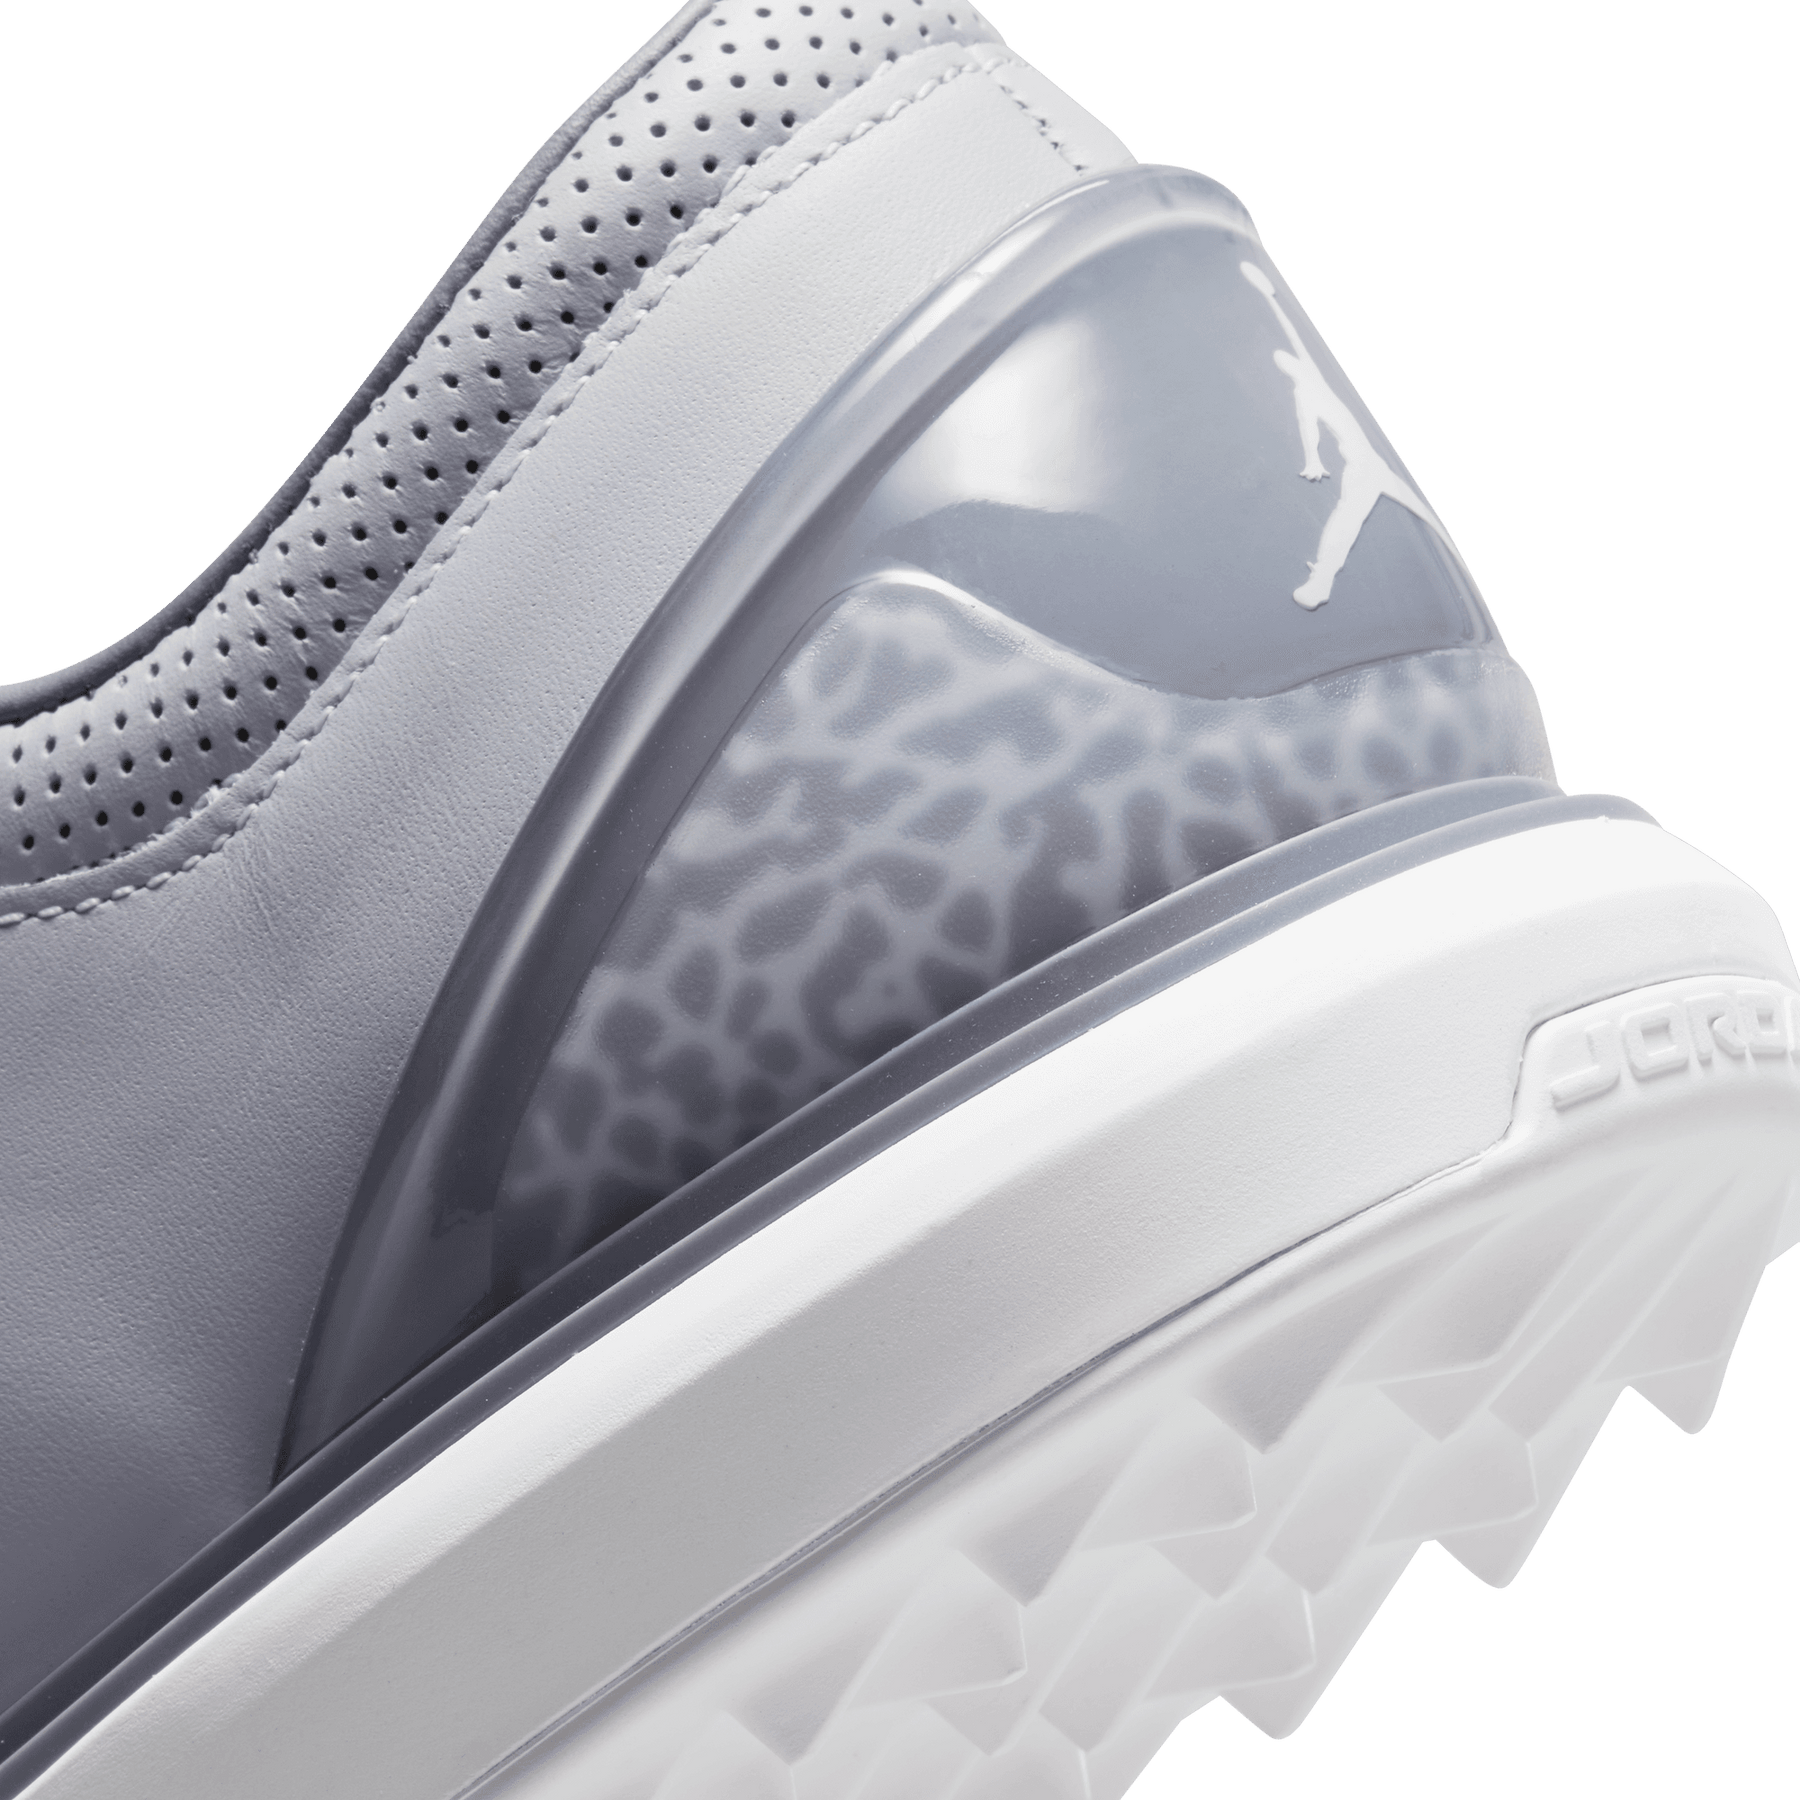 Nike Jordan ADG 4 - Wolf Grey/Smoke Grey/White